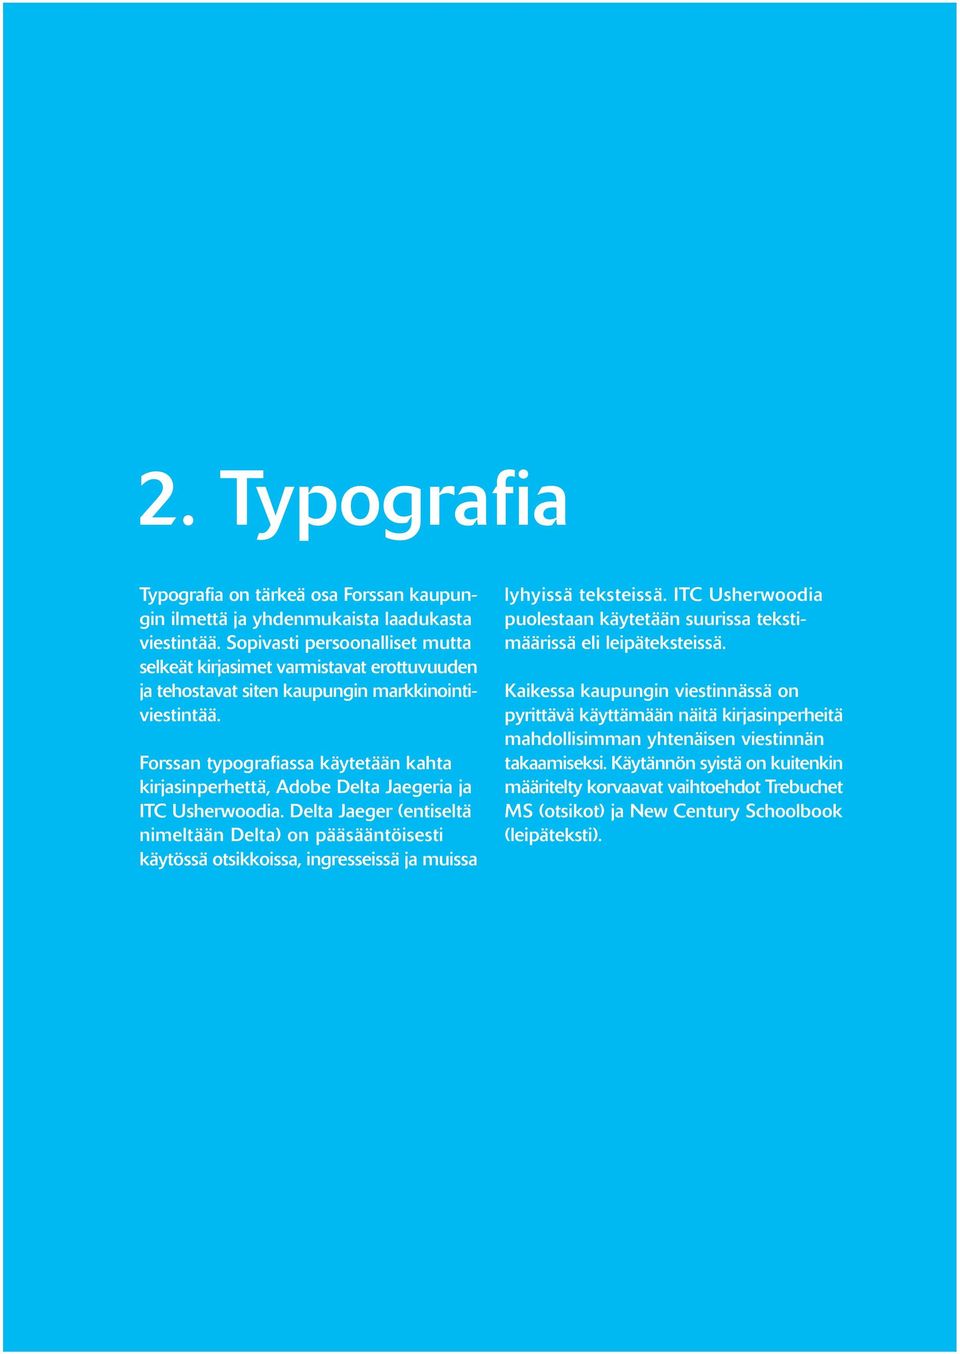 Forssan typografiassa käytetään kahta kirjasinperhettä, Adobe Delta Jaegeria ja ITC Usherwoodia.